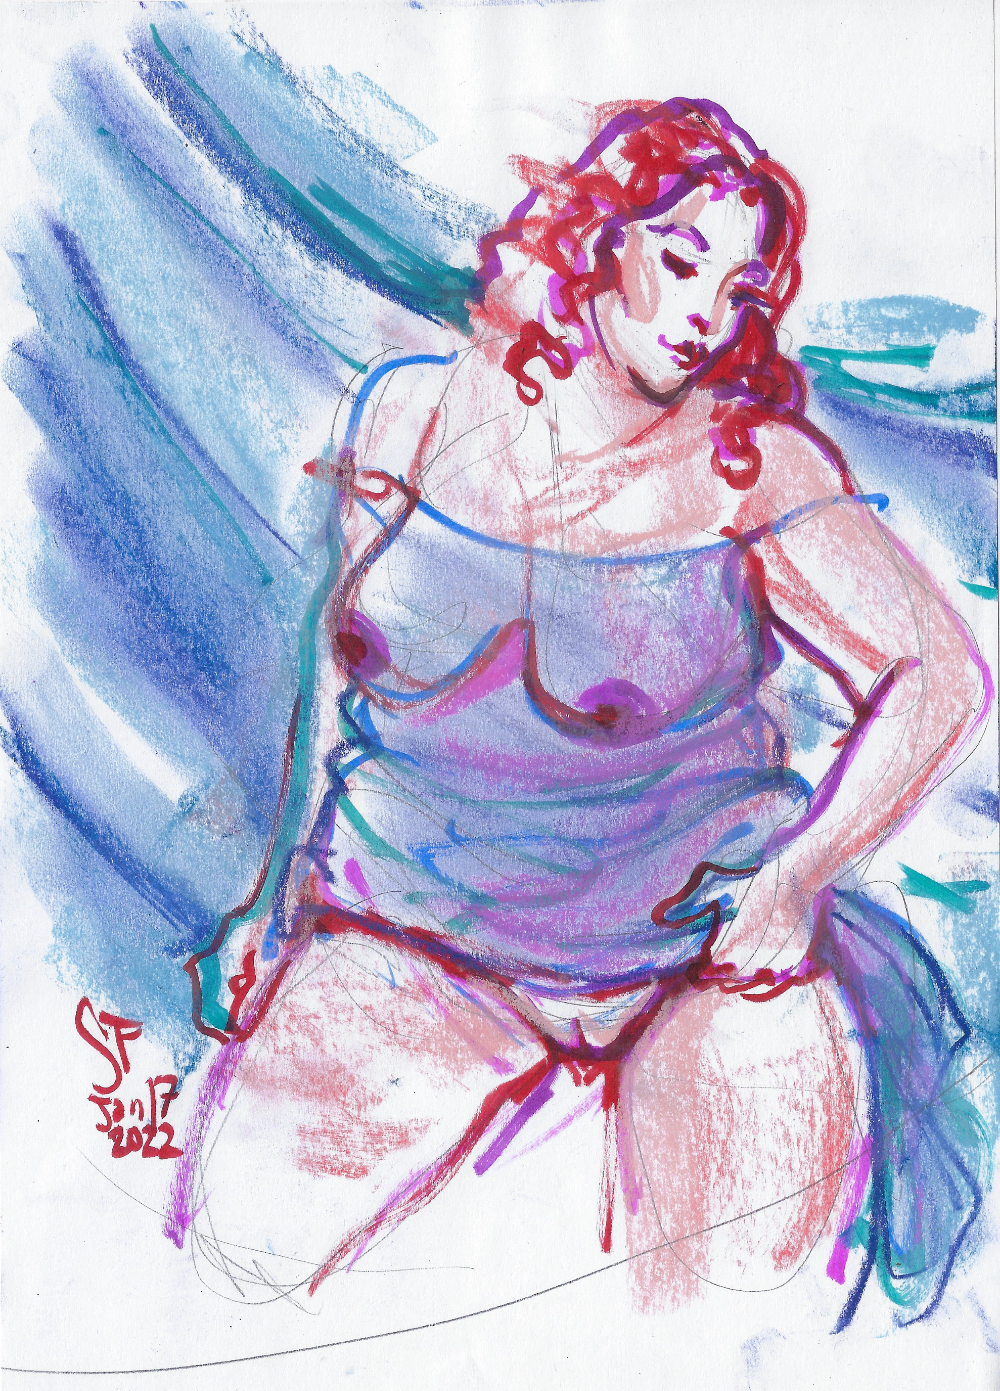 Rubyy a la Lempicka by Suzanne Forbes Jan 17 2022 4